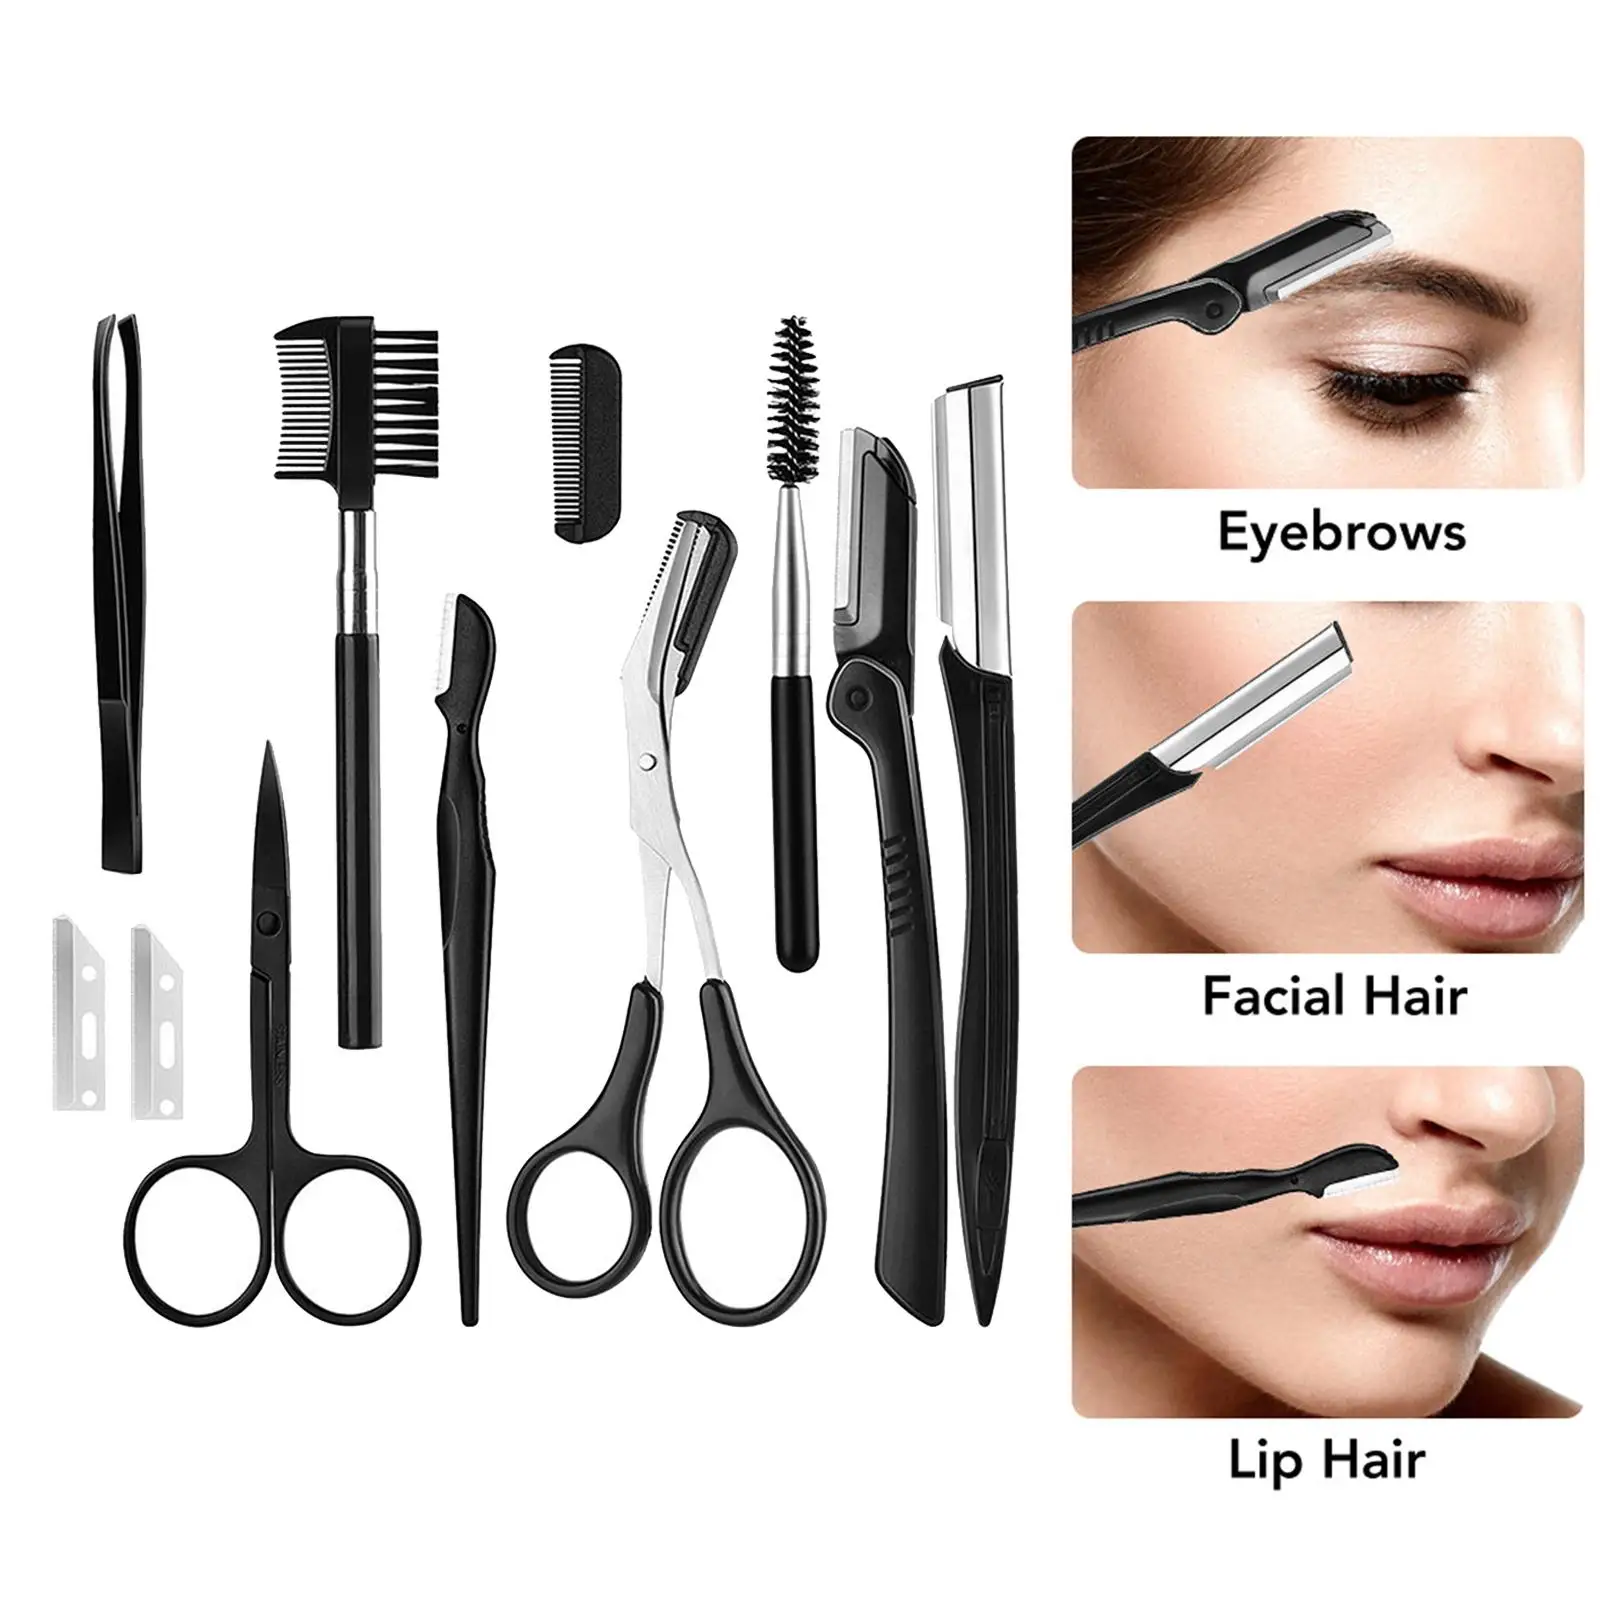 11 In 1 Pro Eyebrow Razor Facial Hair Trimmer Shaper Tweezer Scissors Brush Comb Eye Brow Grooming Kit for Men Women